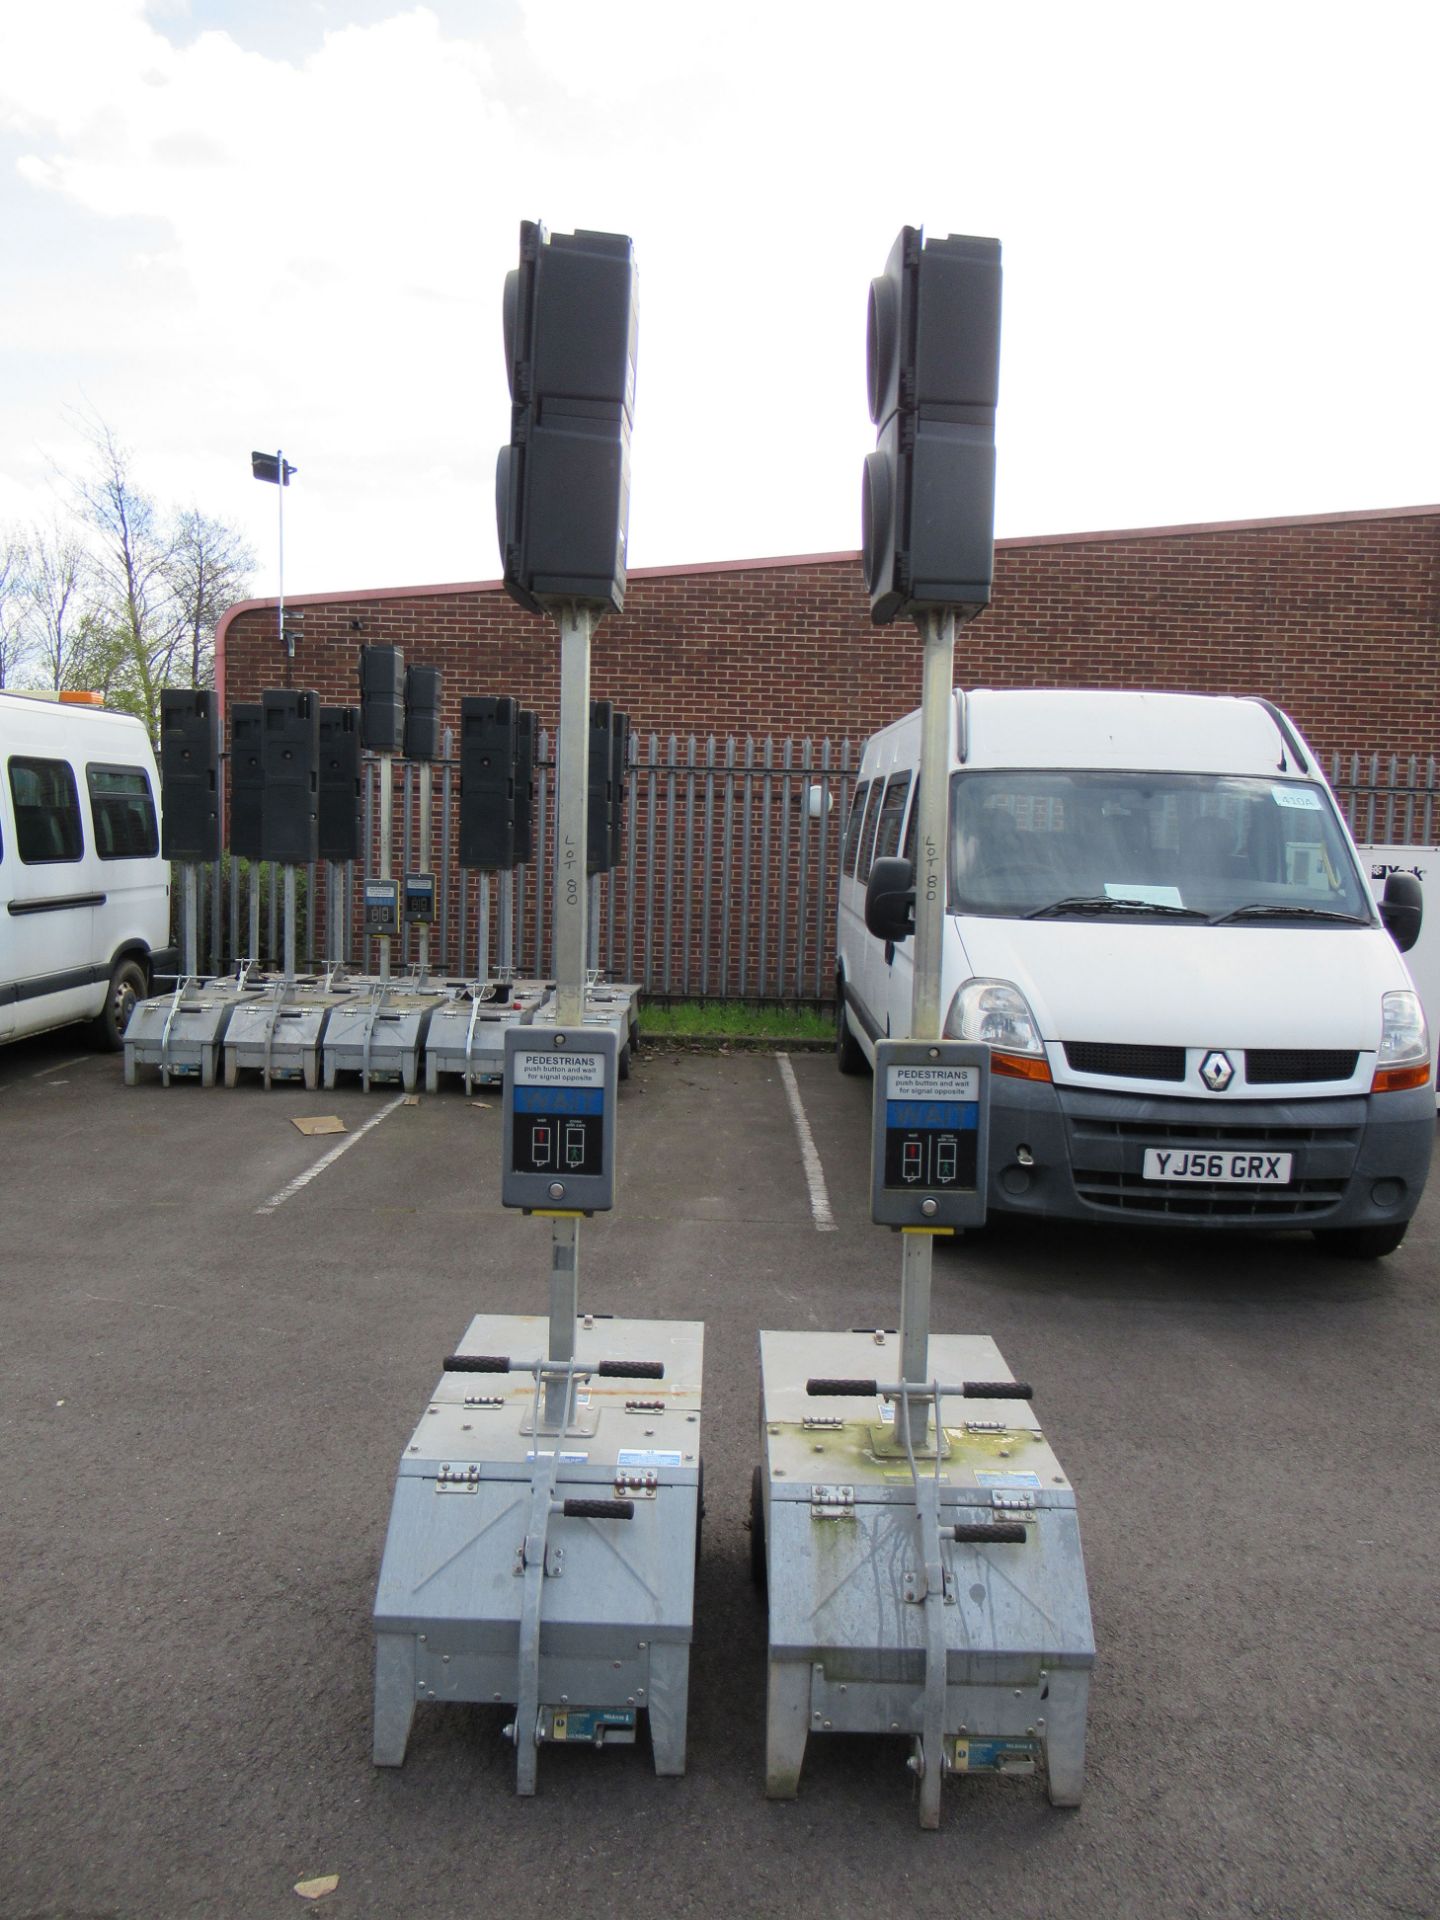 A Pair of Pike Signals Ltd "Pedestrian" Battery Powered Portable Light Units